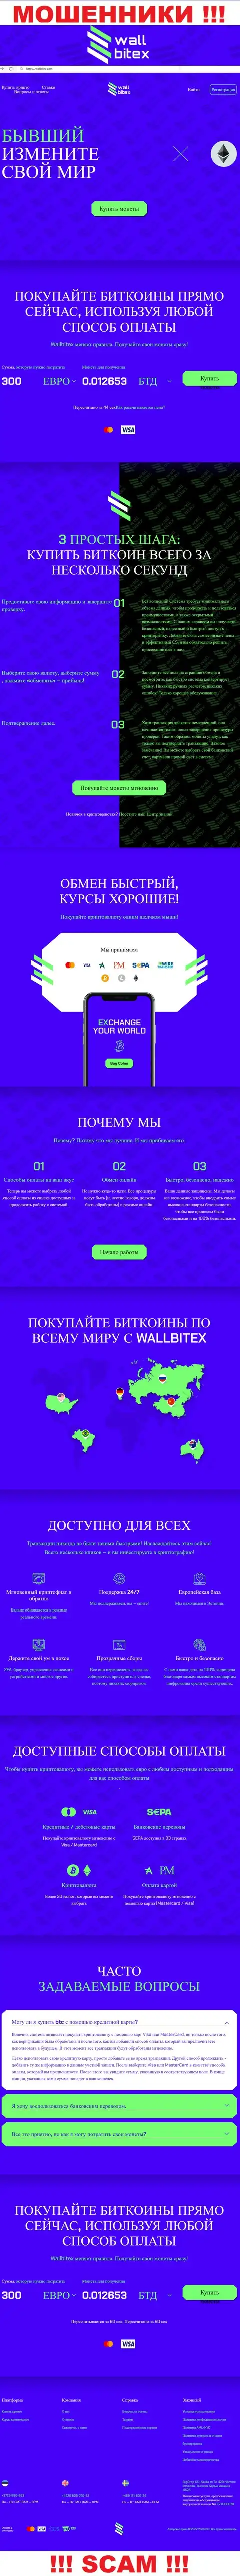 WallBitex Com - это официальный web-ресурс противозаконно действующей компании WallBitex